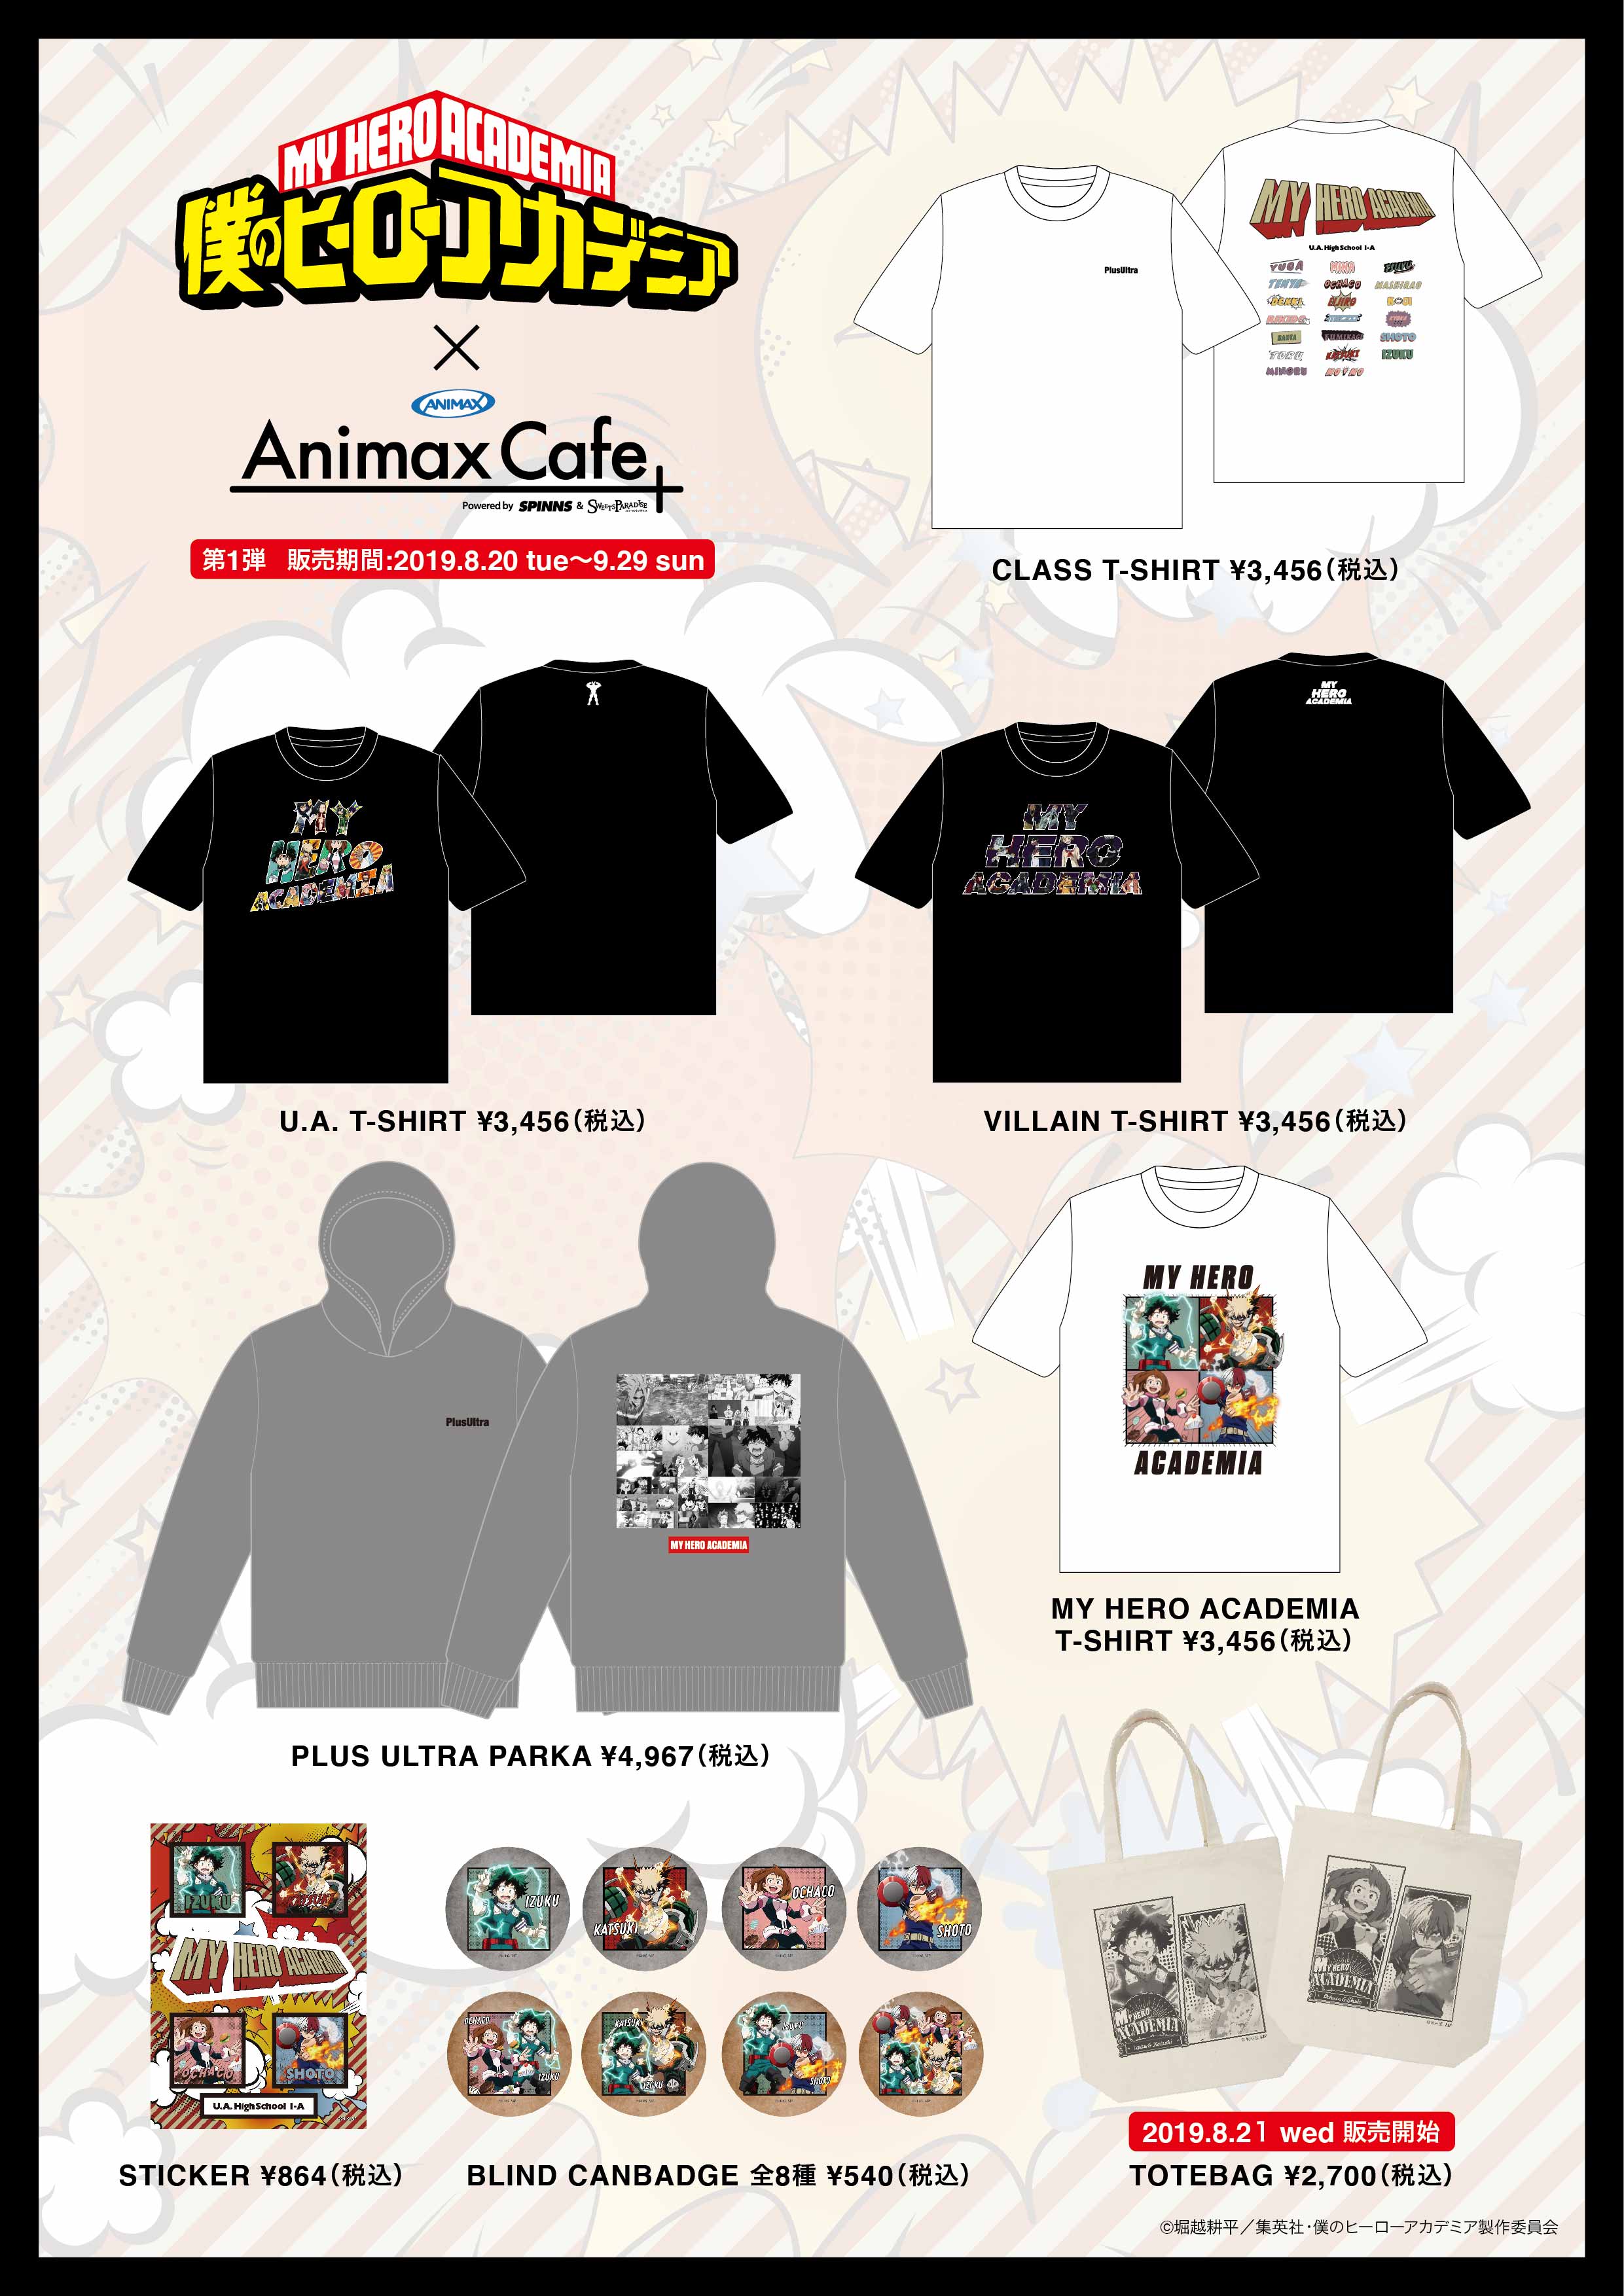 僕のヒーローアカデミア×Animax Cafe+』コラボカフェの詳細発表